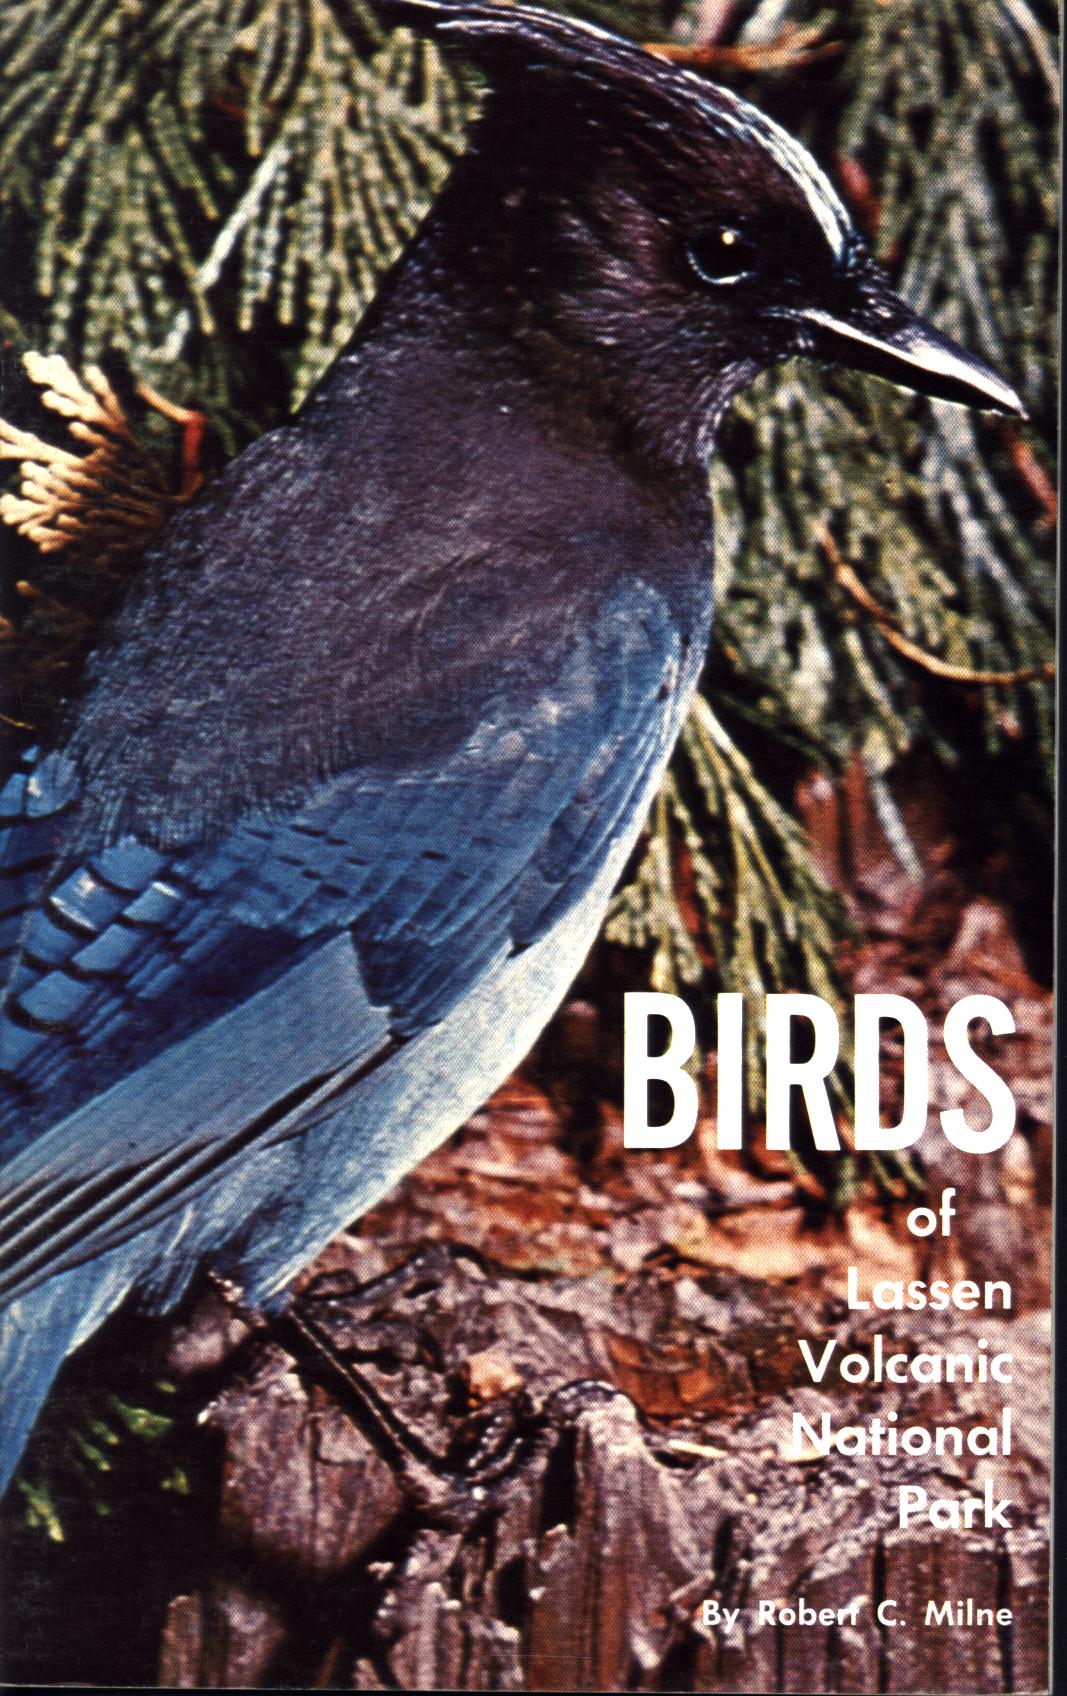 BIRDS OF LASSEN VOLCANIC NATIONAL PARK. by Robert C. Milne.